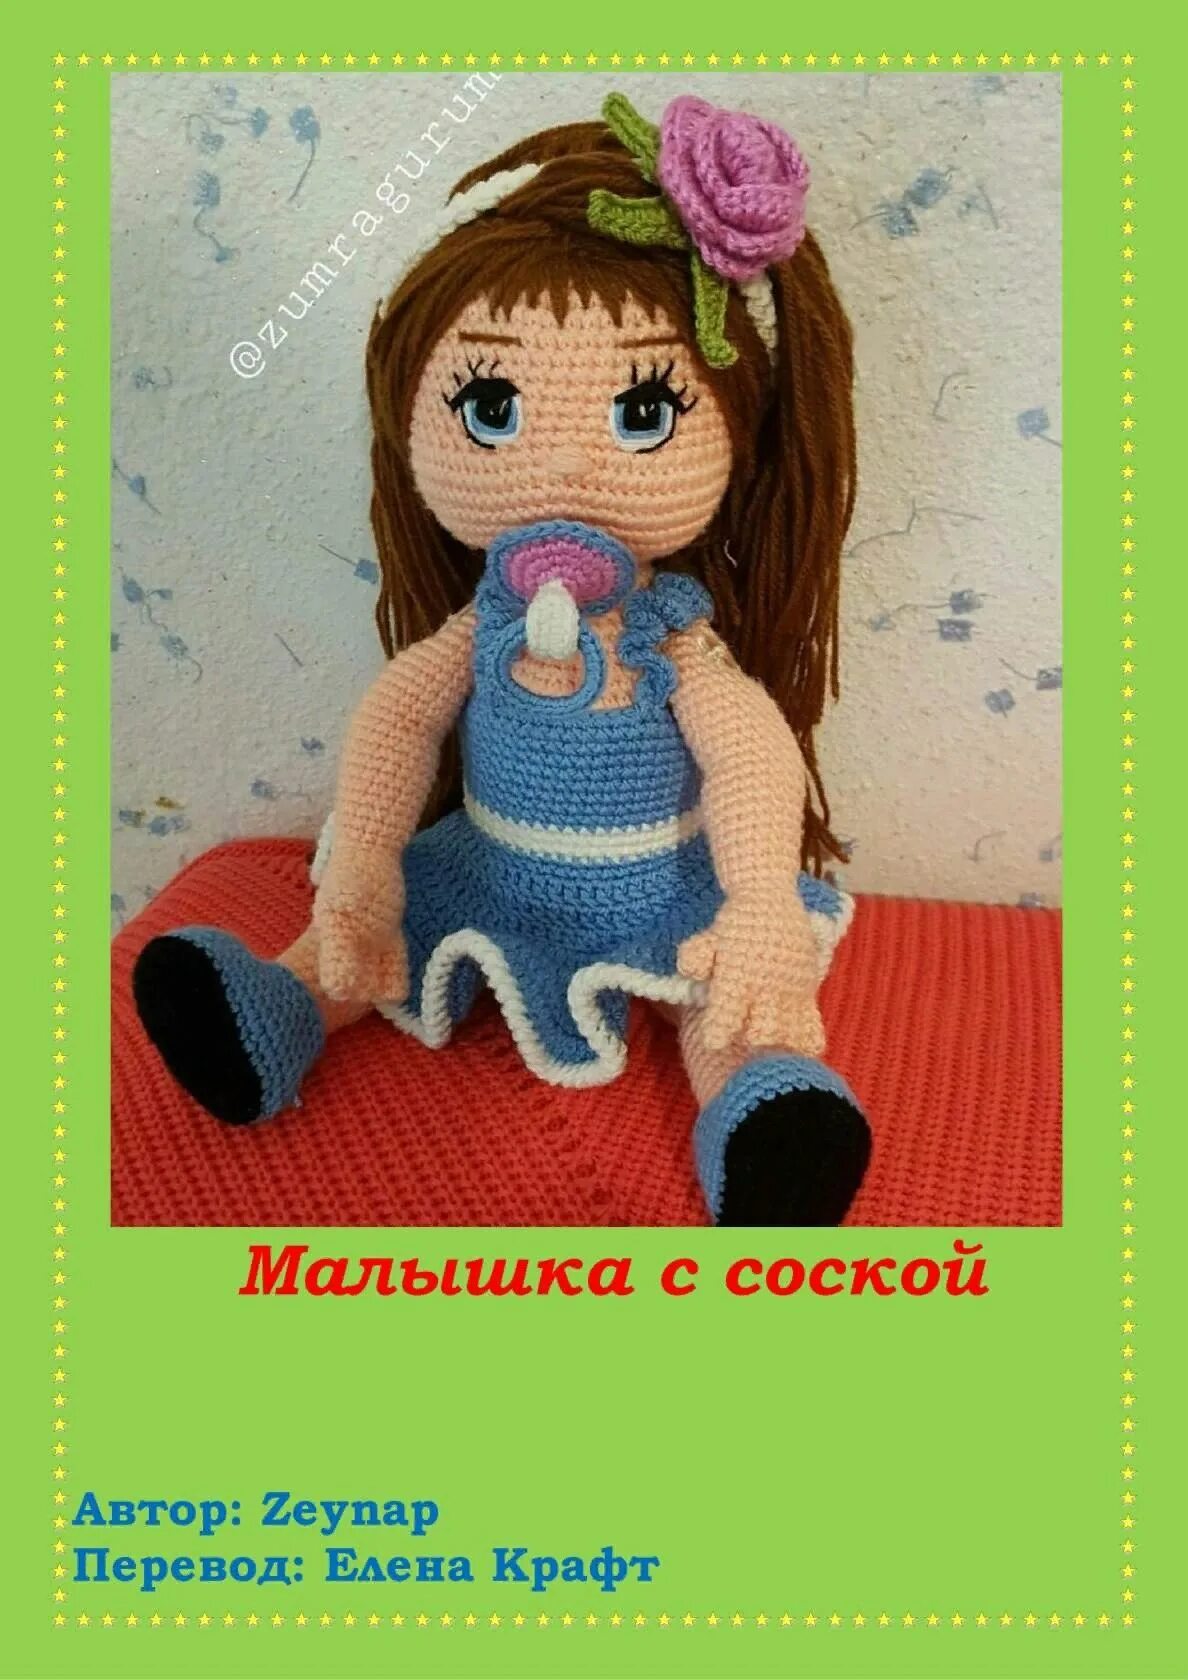 Elena перевод. Кукла крючком с соской. Вязаный пупс с соской. Кукла пустышка для куклы крючком.